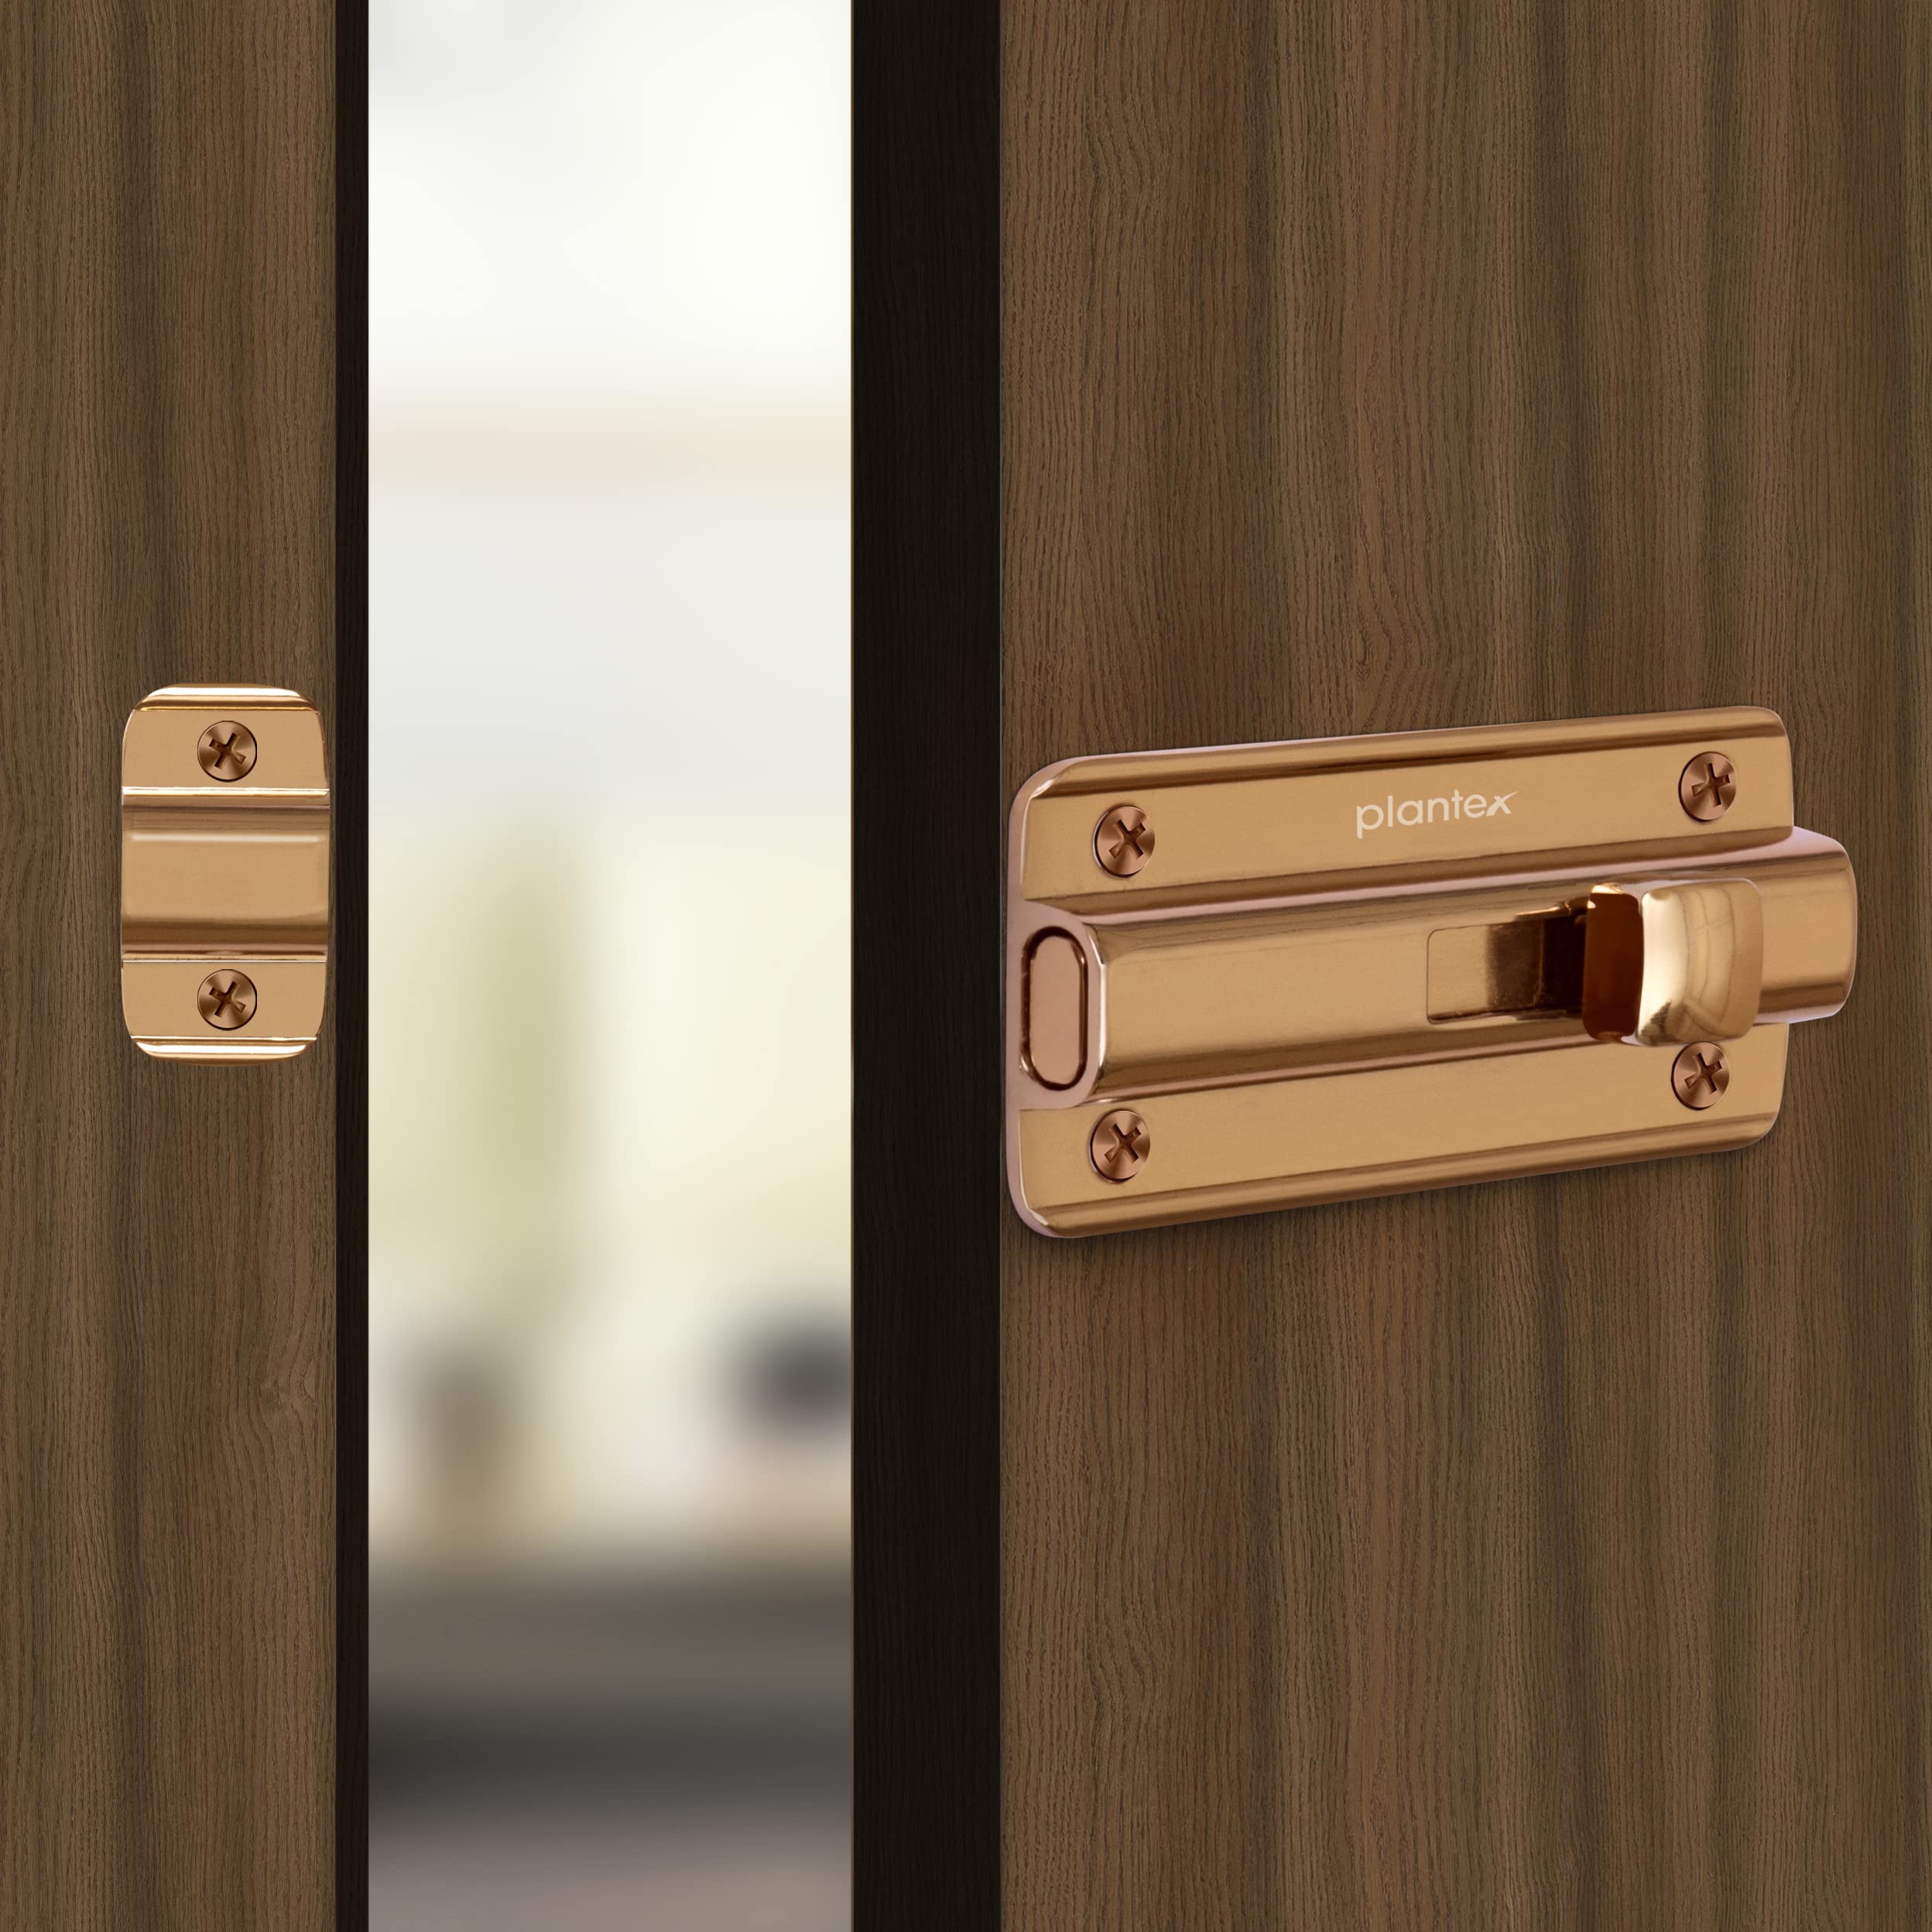 Plantex Premium Heavy Duty Door Stopper/Door Lock Latch for Home and Office Doors - Pack of 10 (Rose Gold)